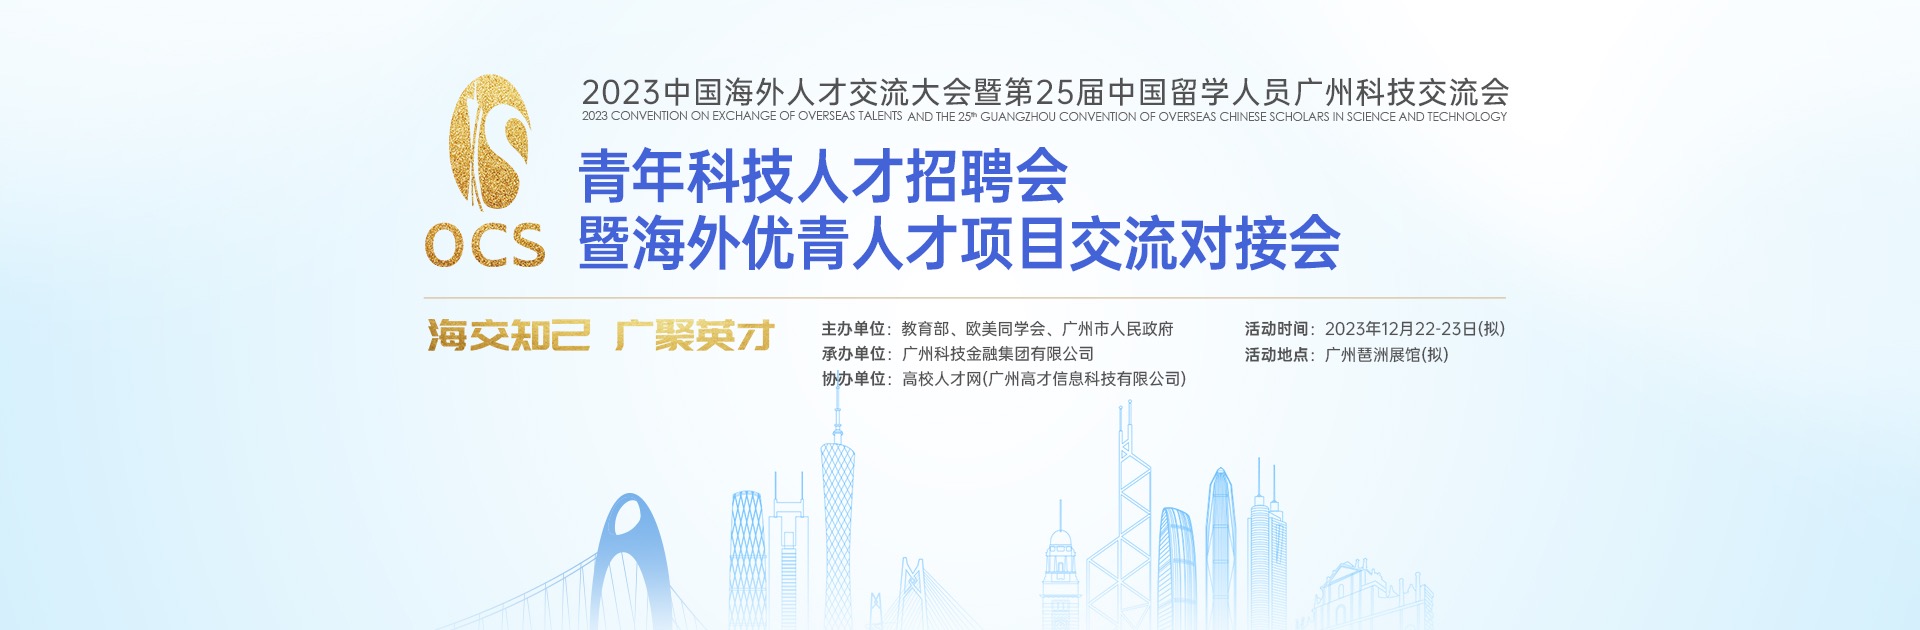 中国海外人才交流大会暨第 25 届中国留学人员广州科技交流会